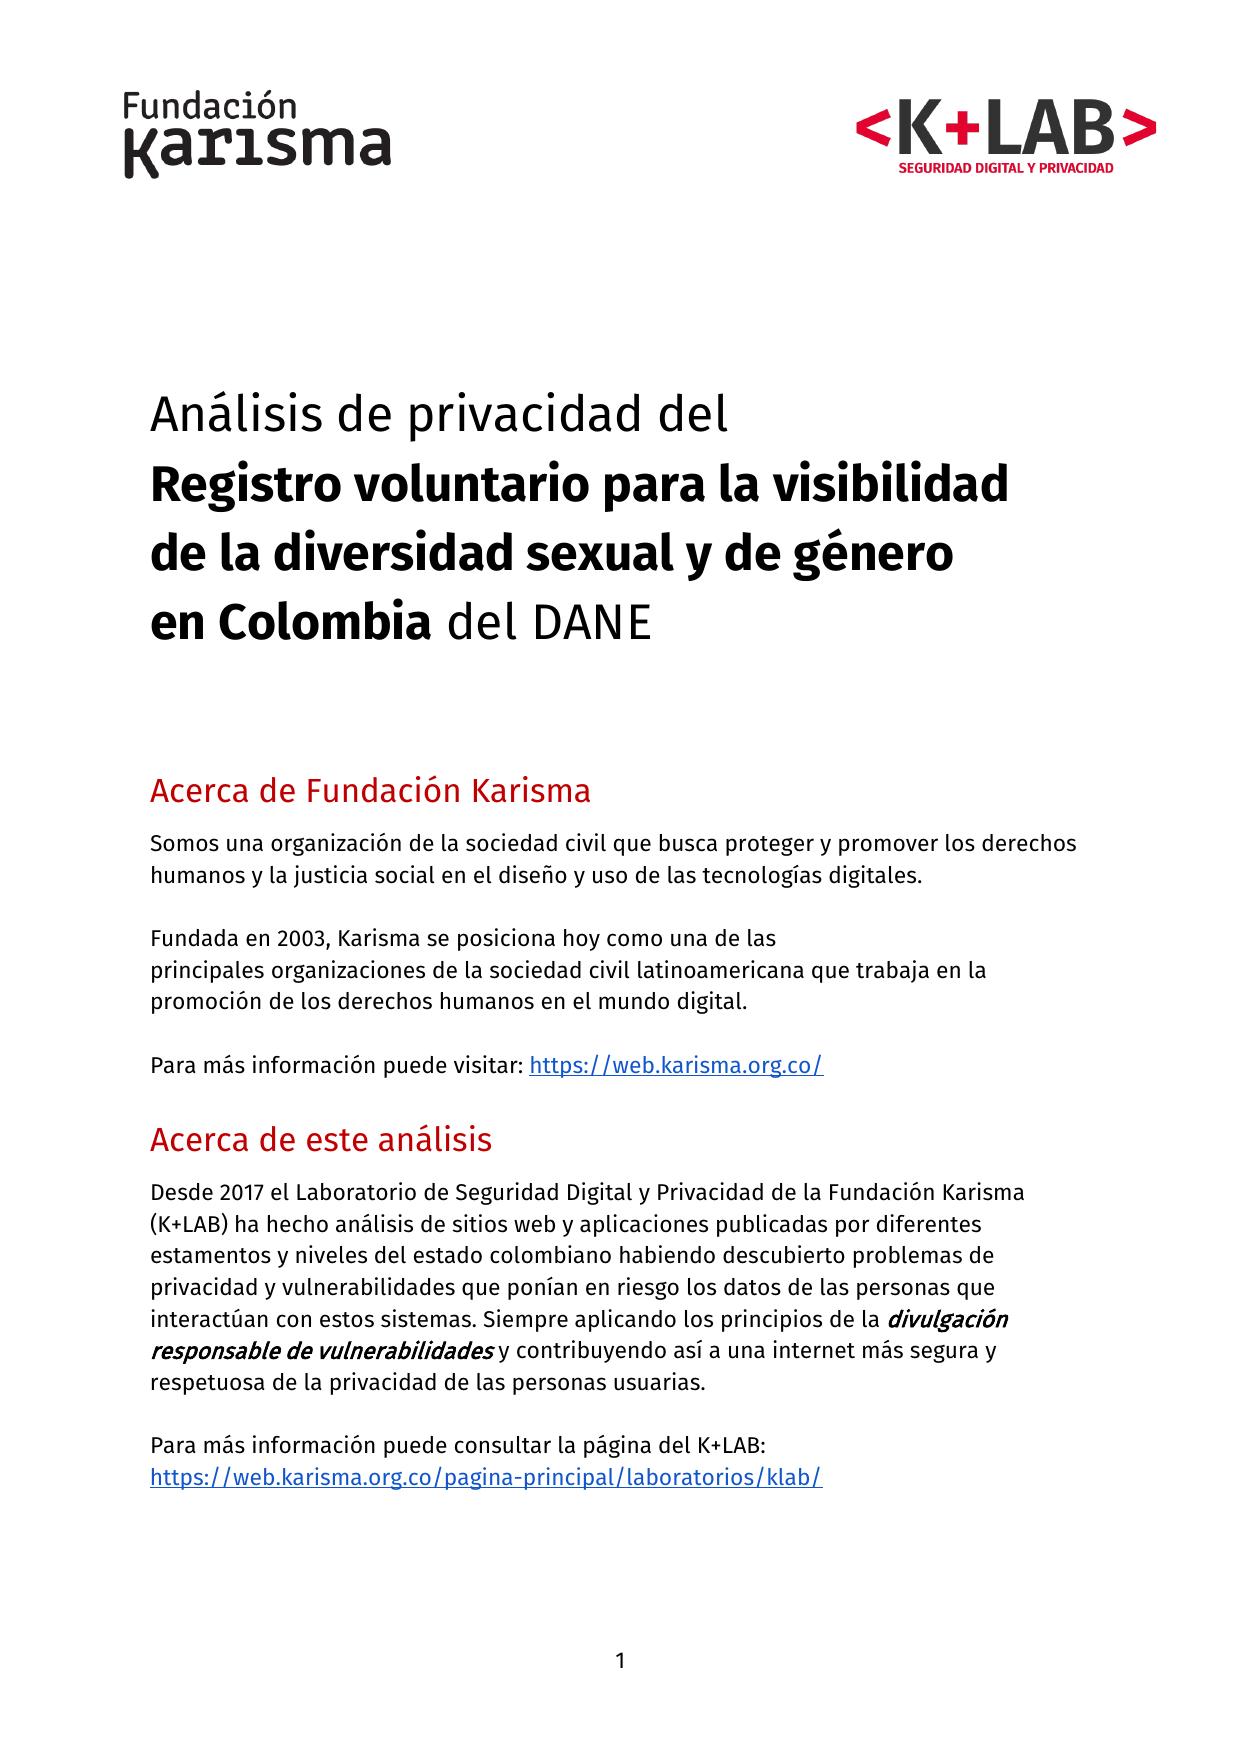 Análisis de privacidad del registro voluntario para la visibilidad de la diversidad sexual y de género en Colombia del DANE